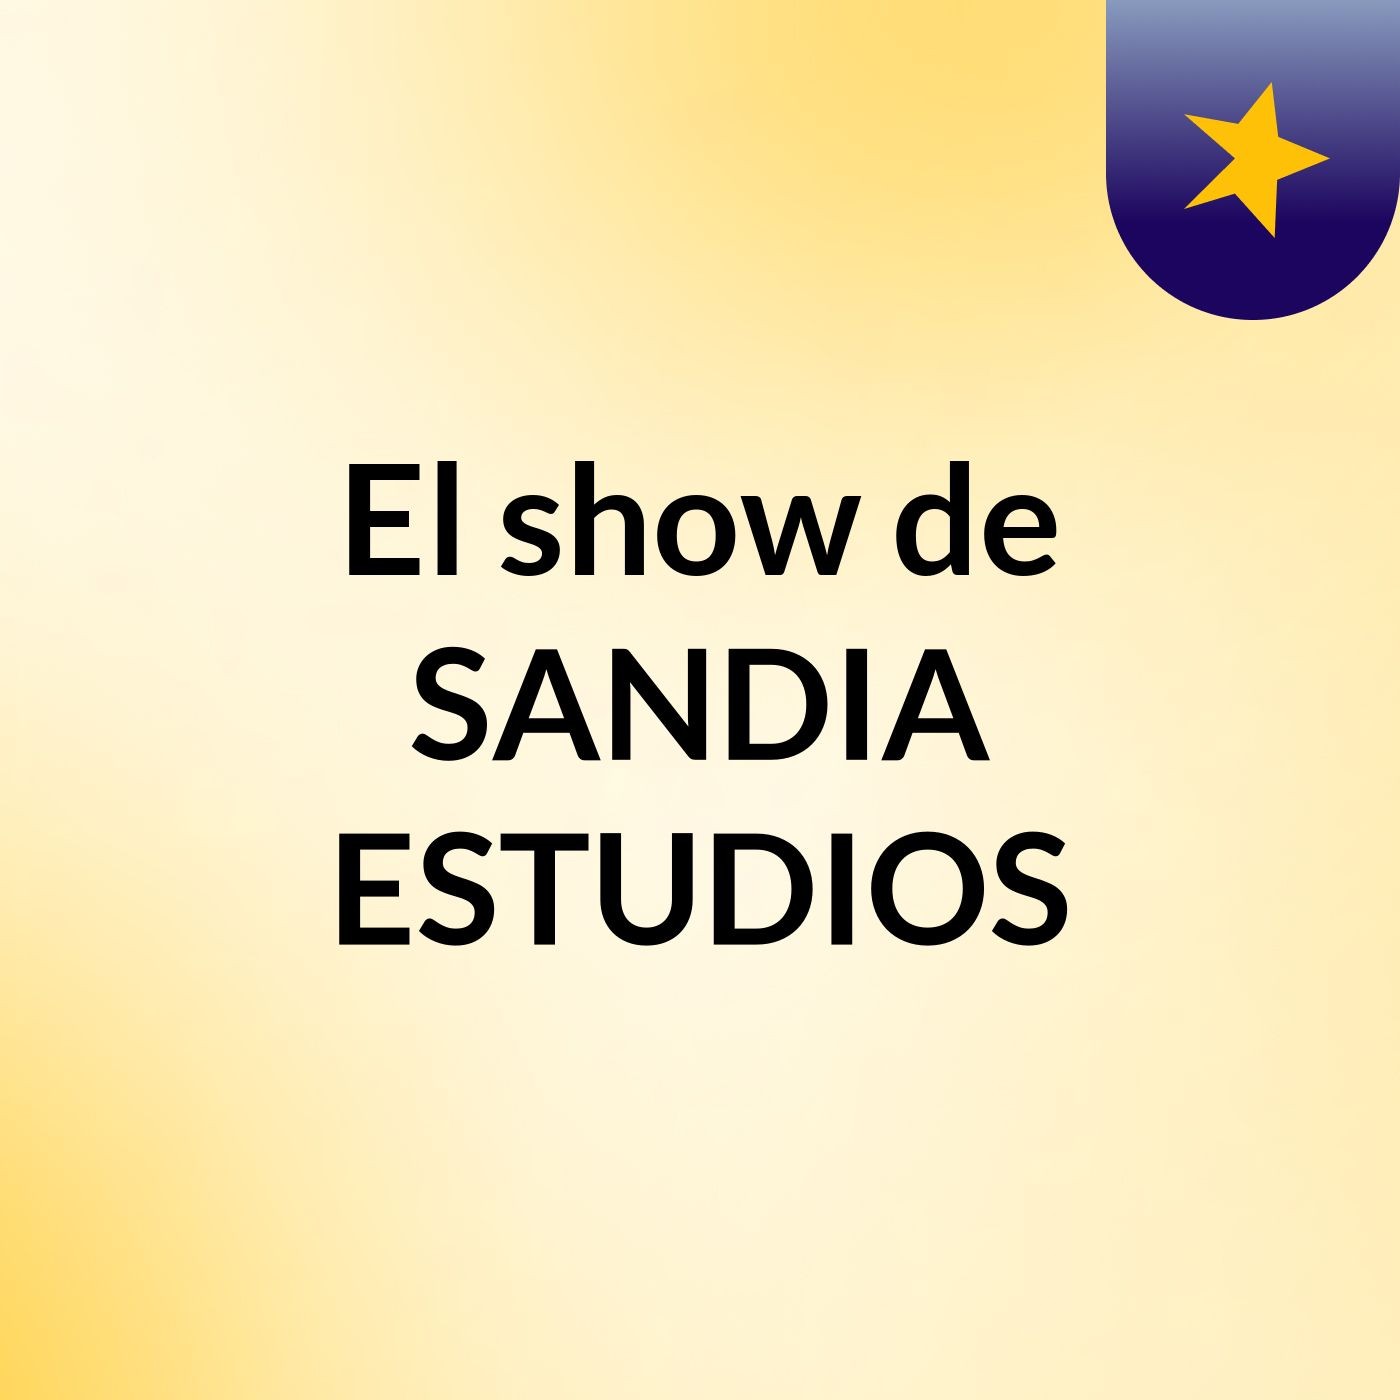 El show de SANDIA ESTUDIOS